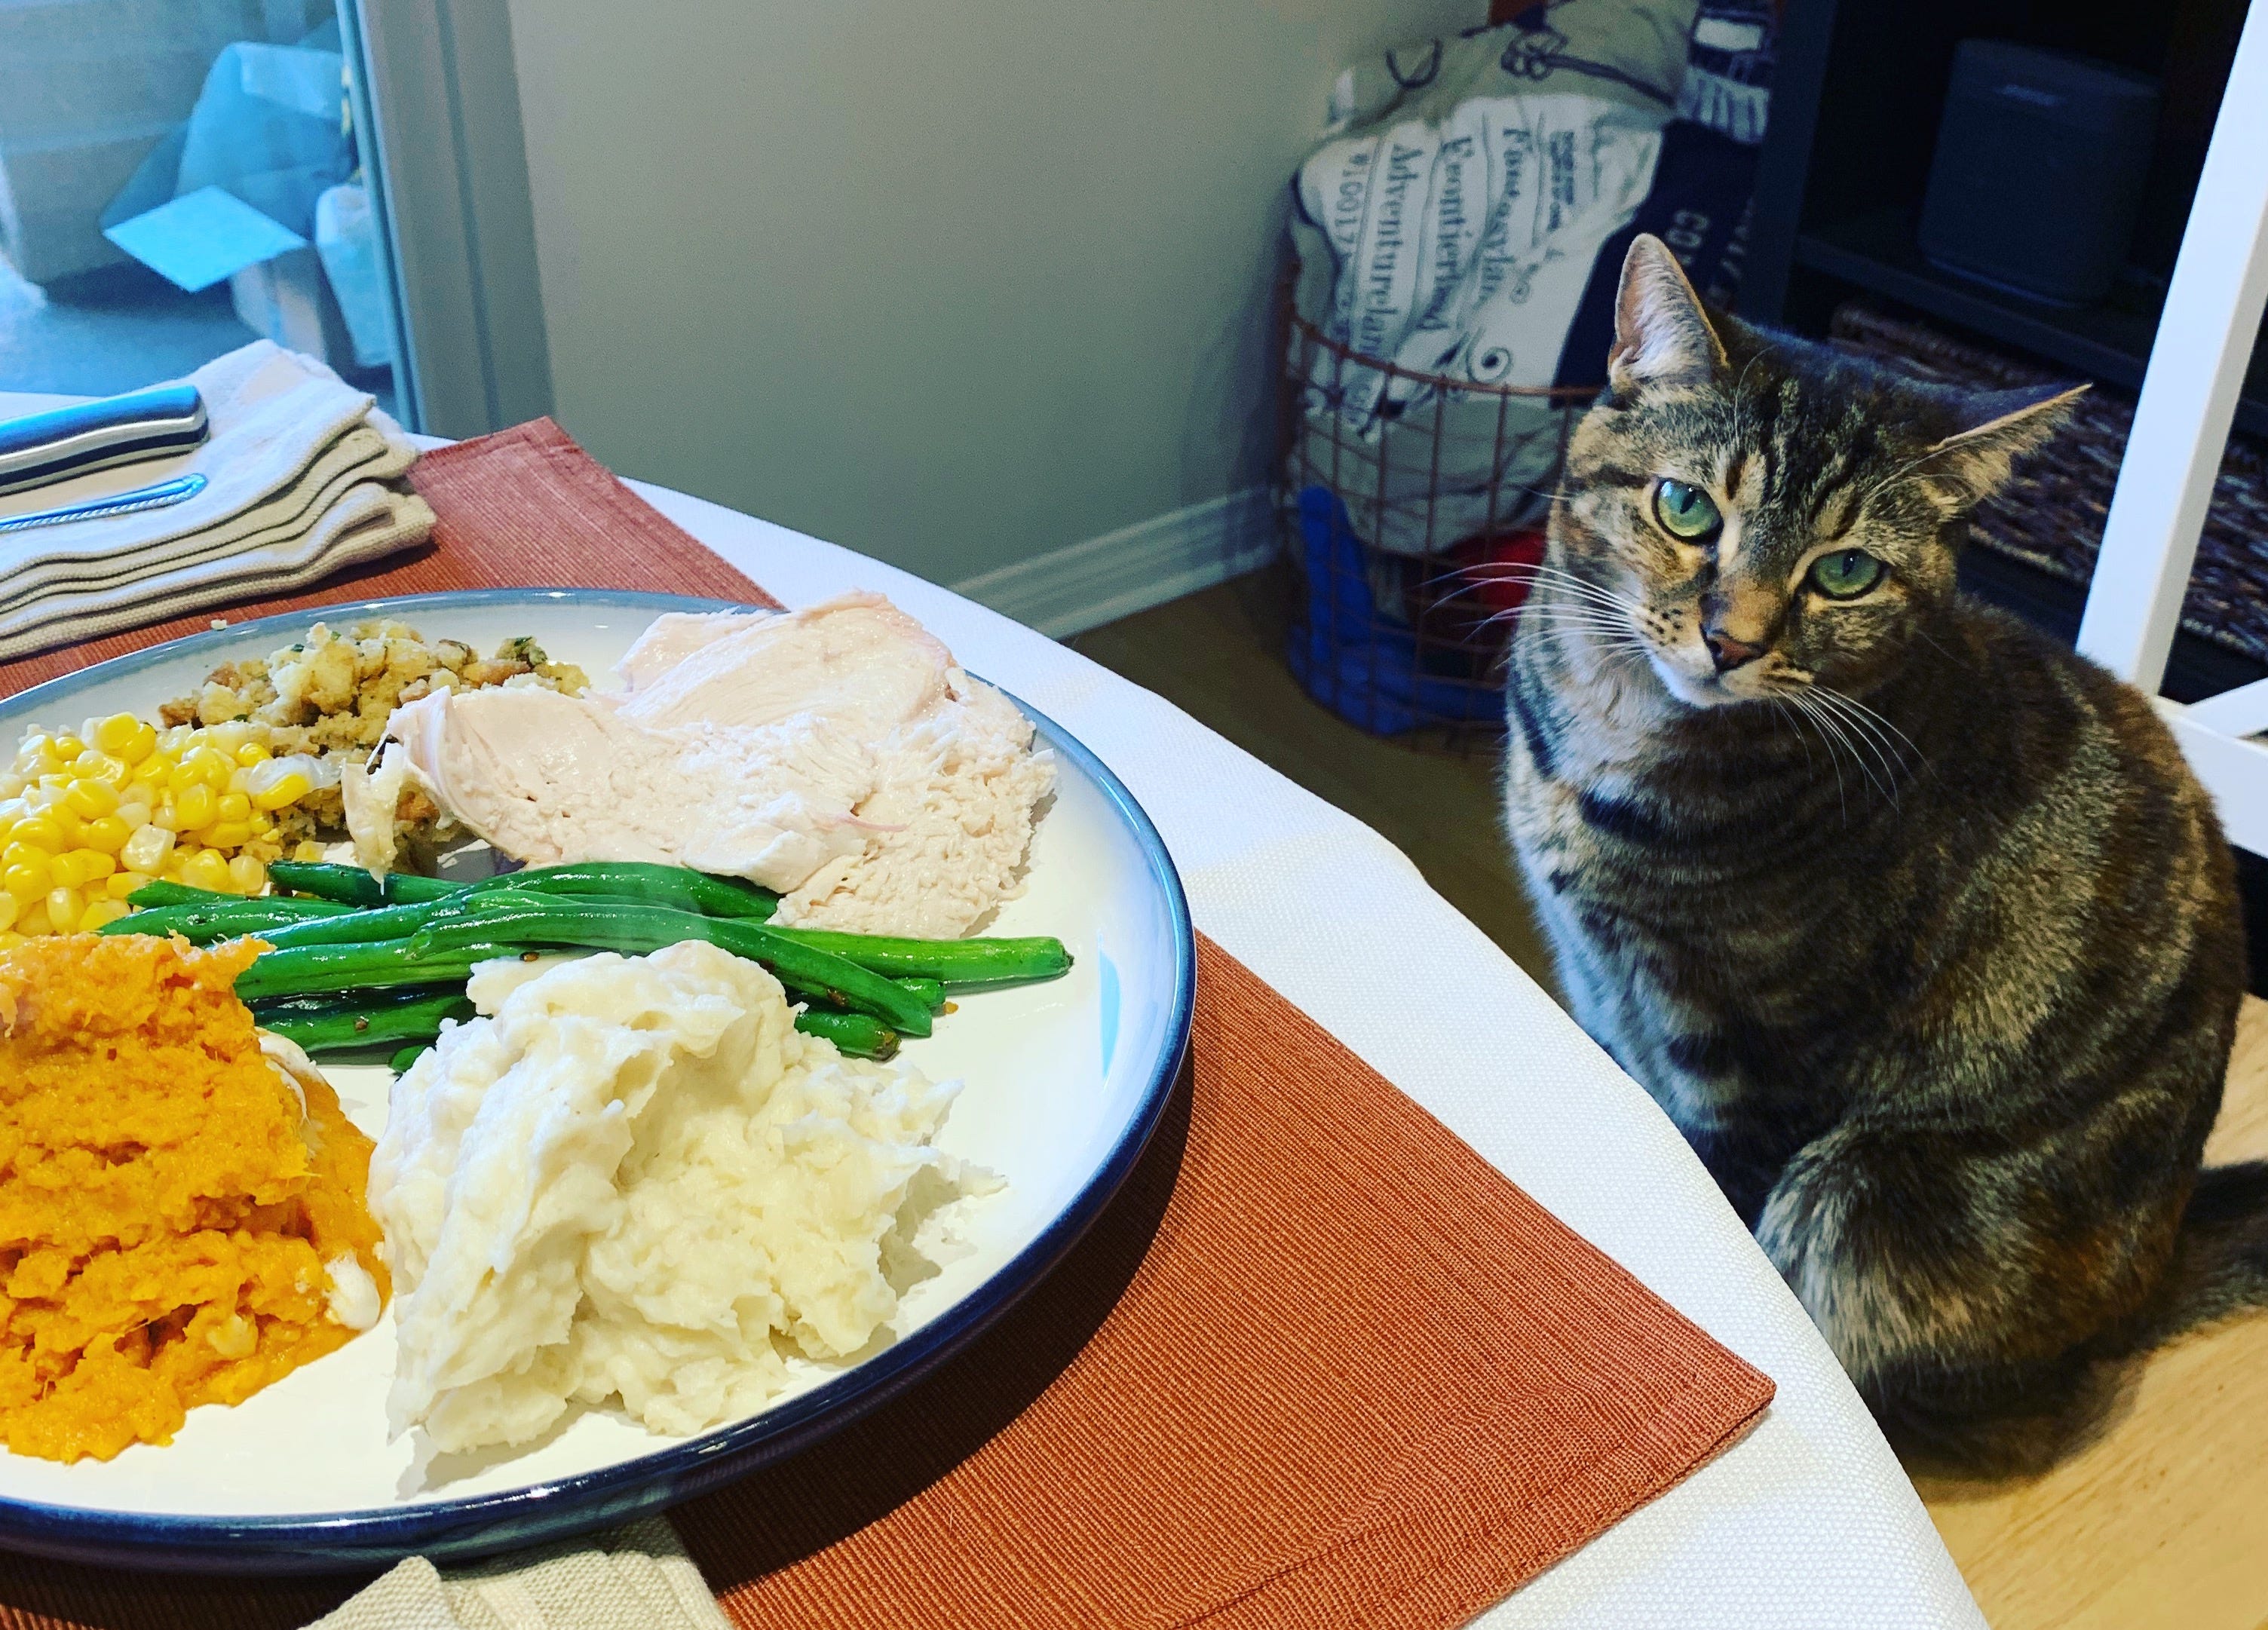 Katze sitzt vor einem Teller mit Essen